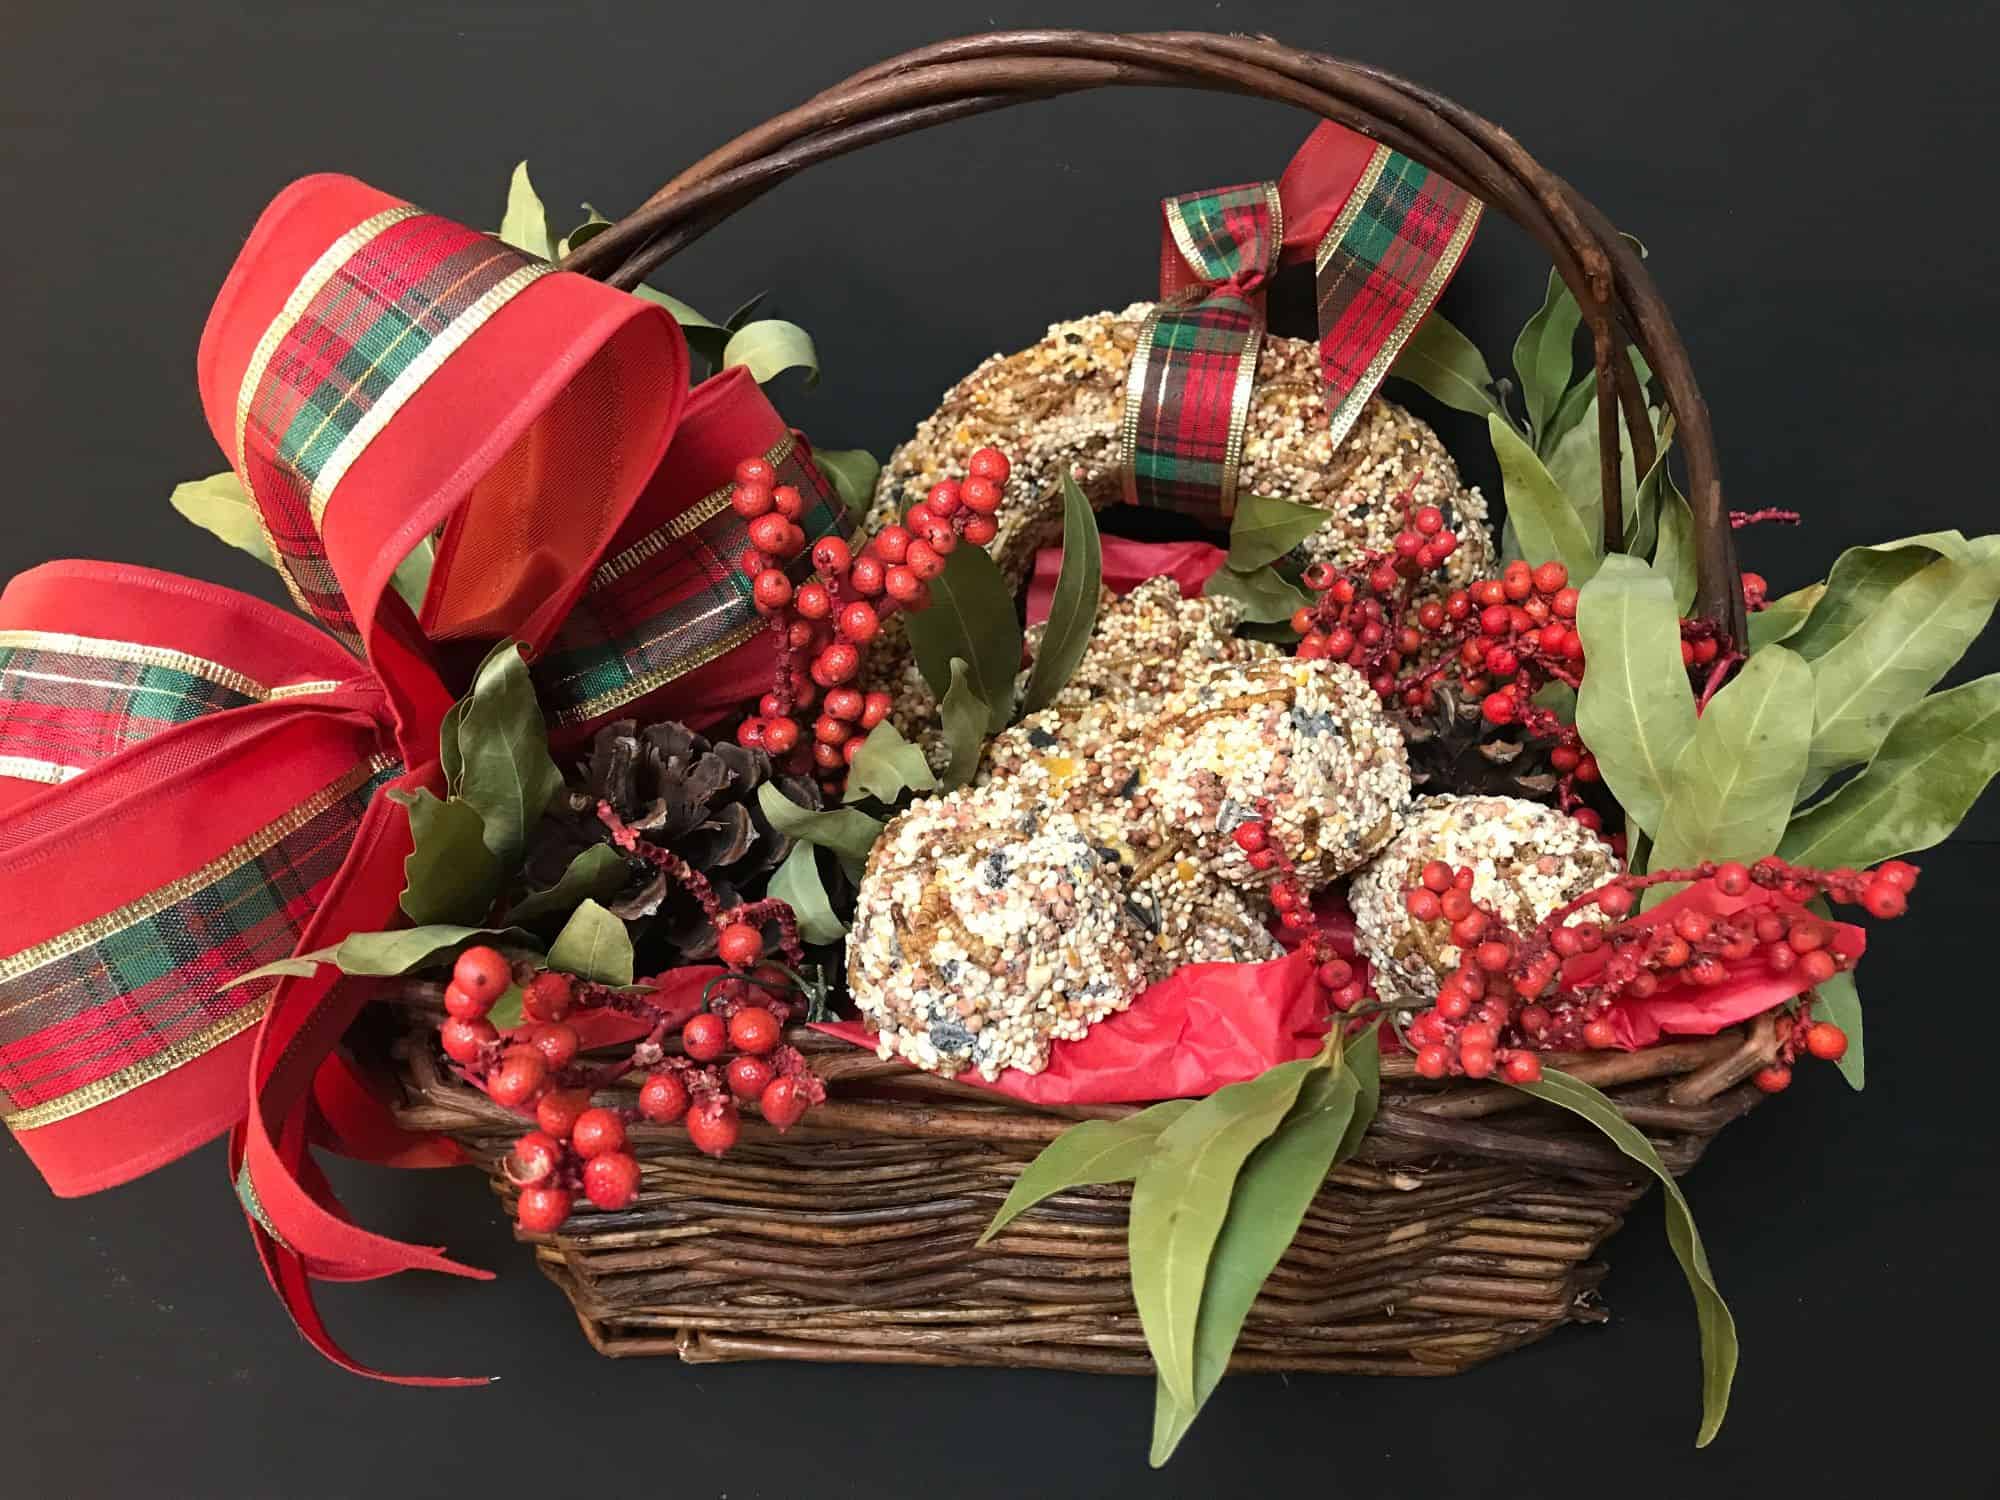 birdseed ornament treats in a gift basket